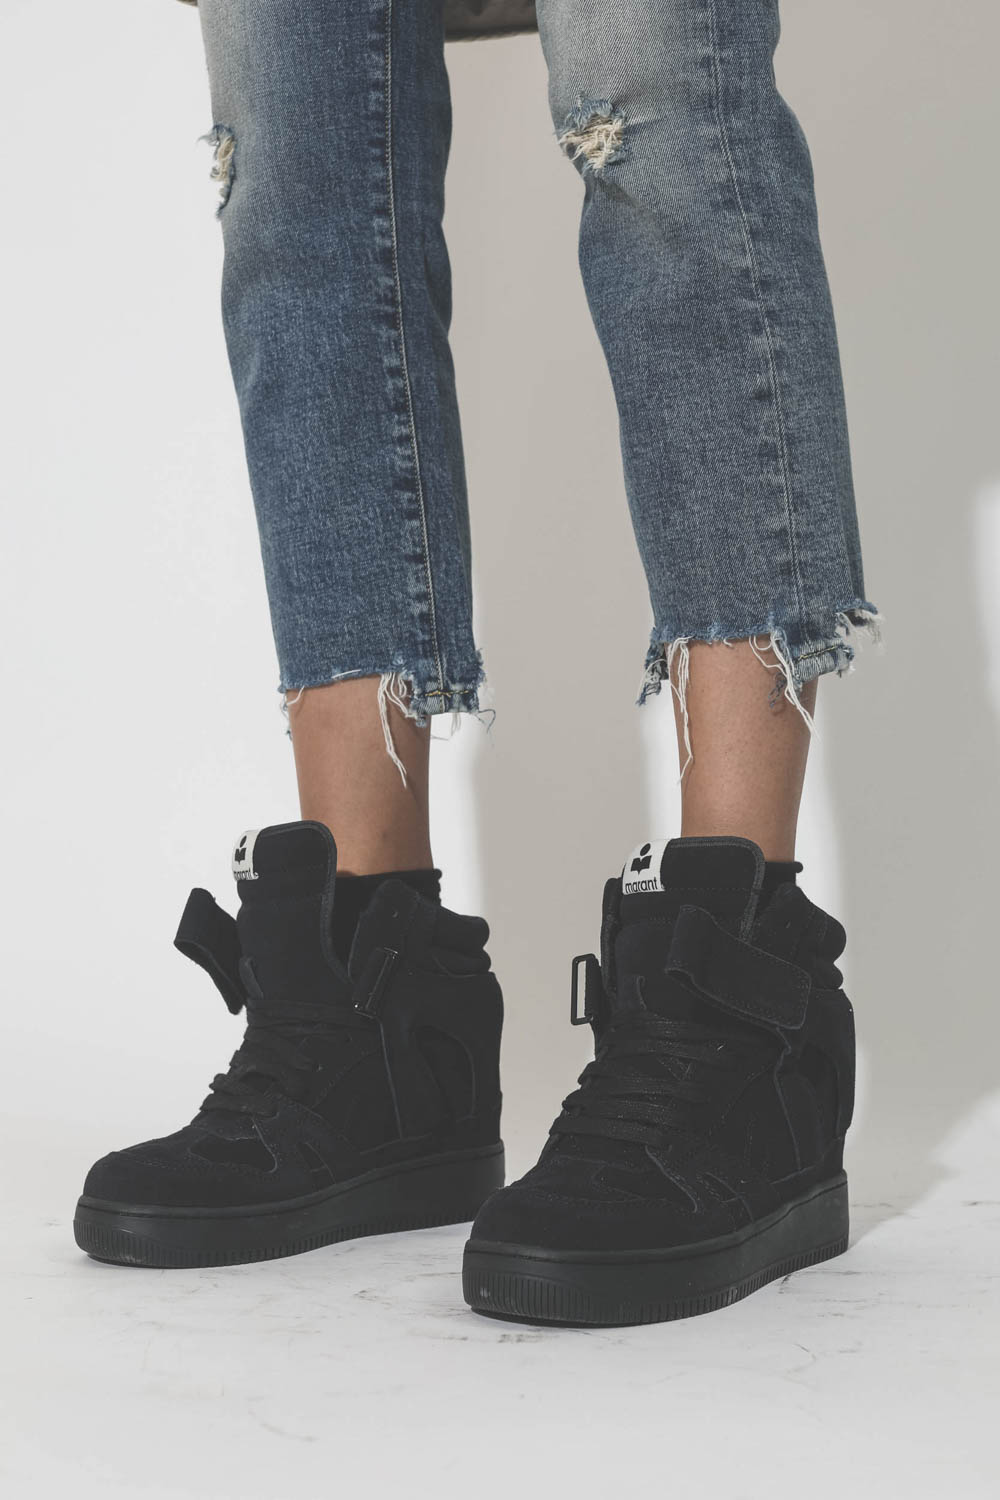 Sneakers compensées en cuir suédé noir délavé Ellyn Isabel Marant. Porté avec un jean court.